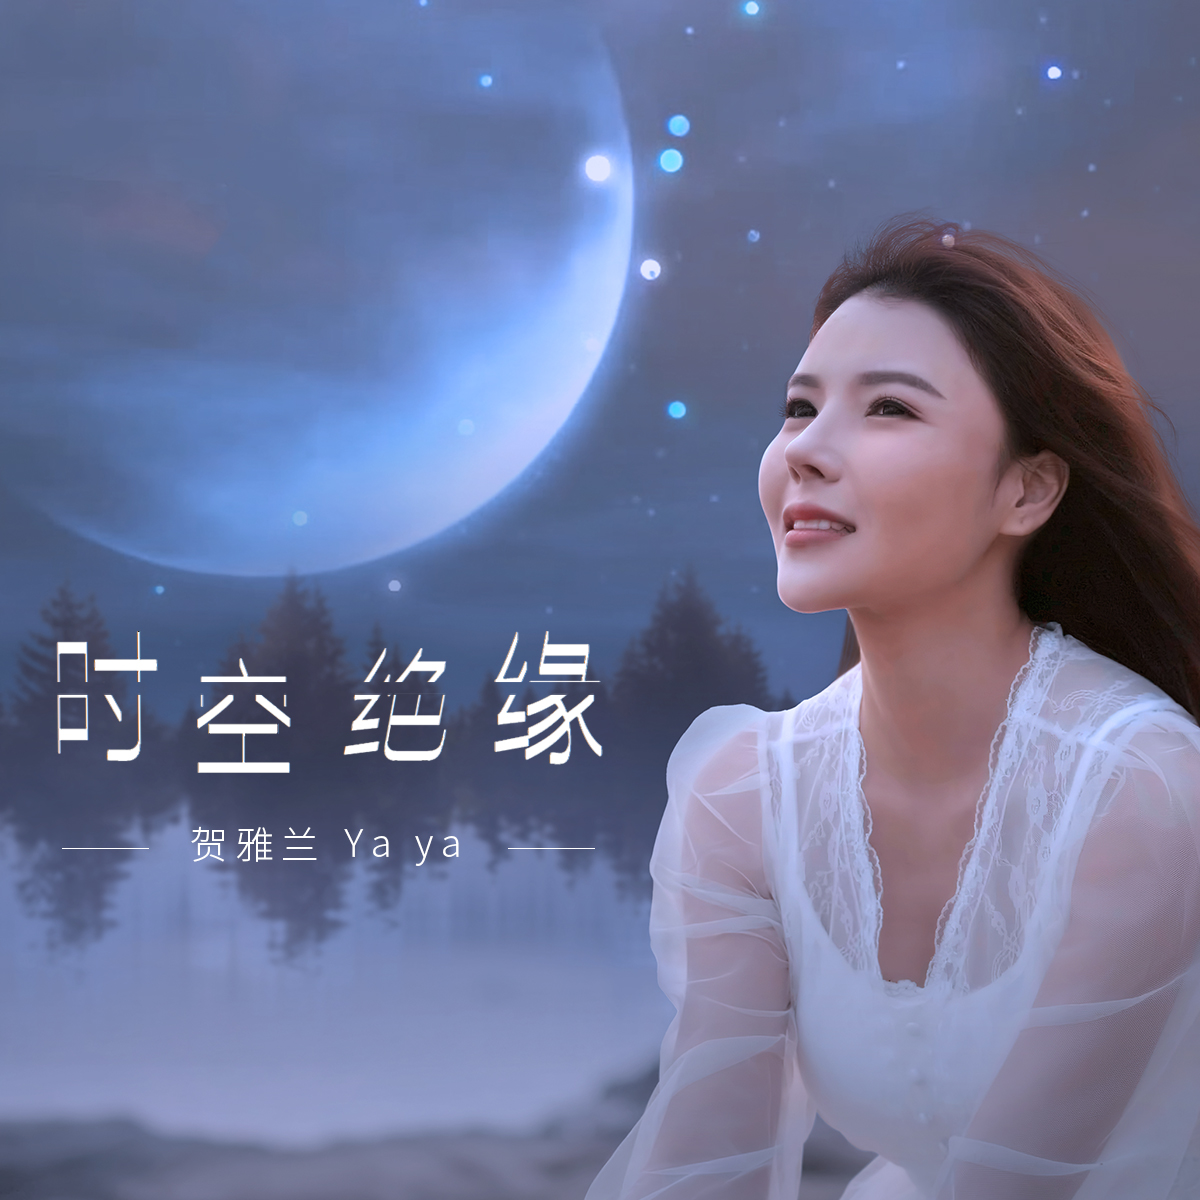 贺雅兰2020最新单曲《时空绝缘》全网震撼上线_毕业